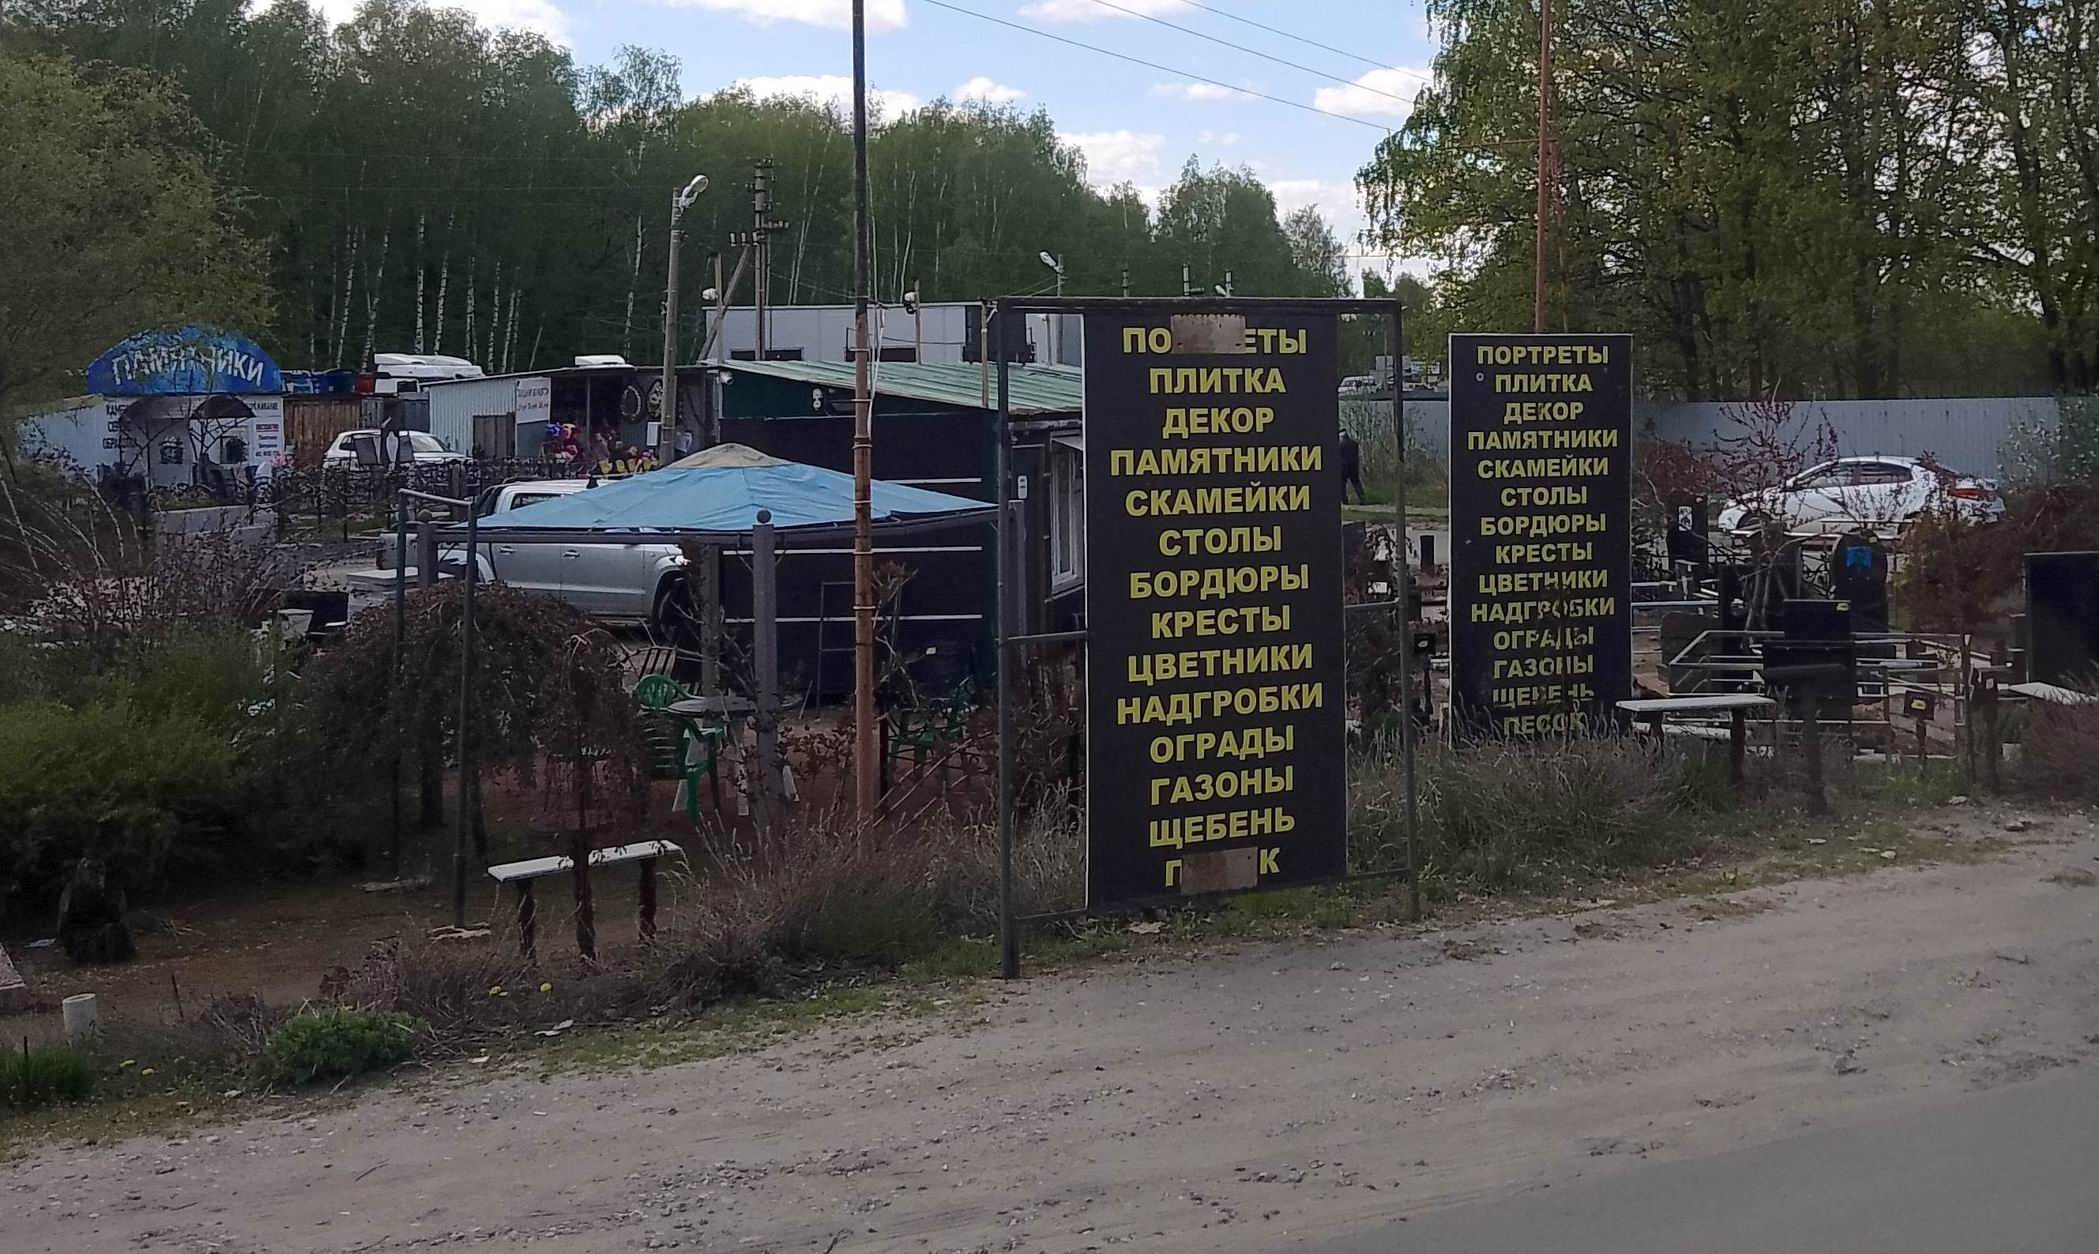 Преображенское кладбище в Рязани обустроят за 30 миллионов рублей